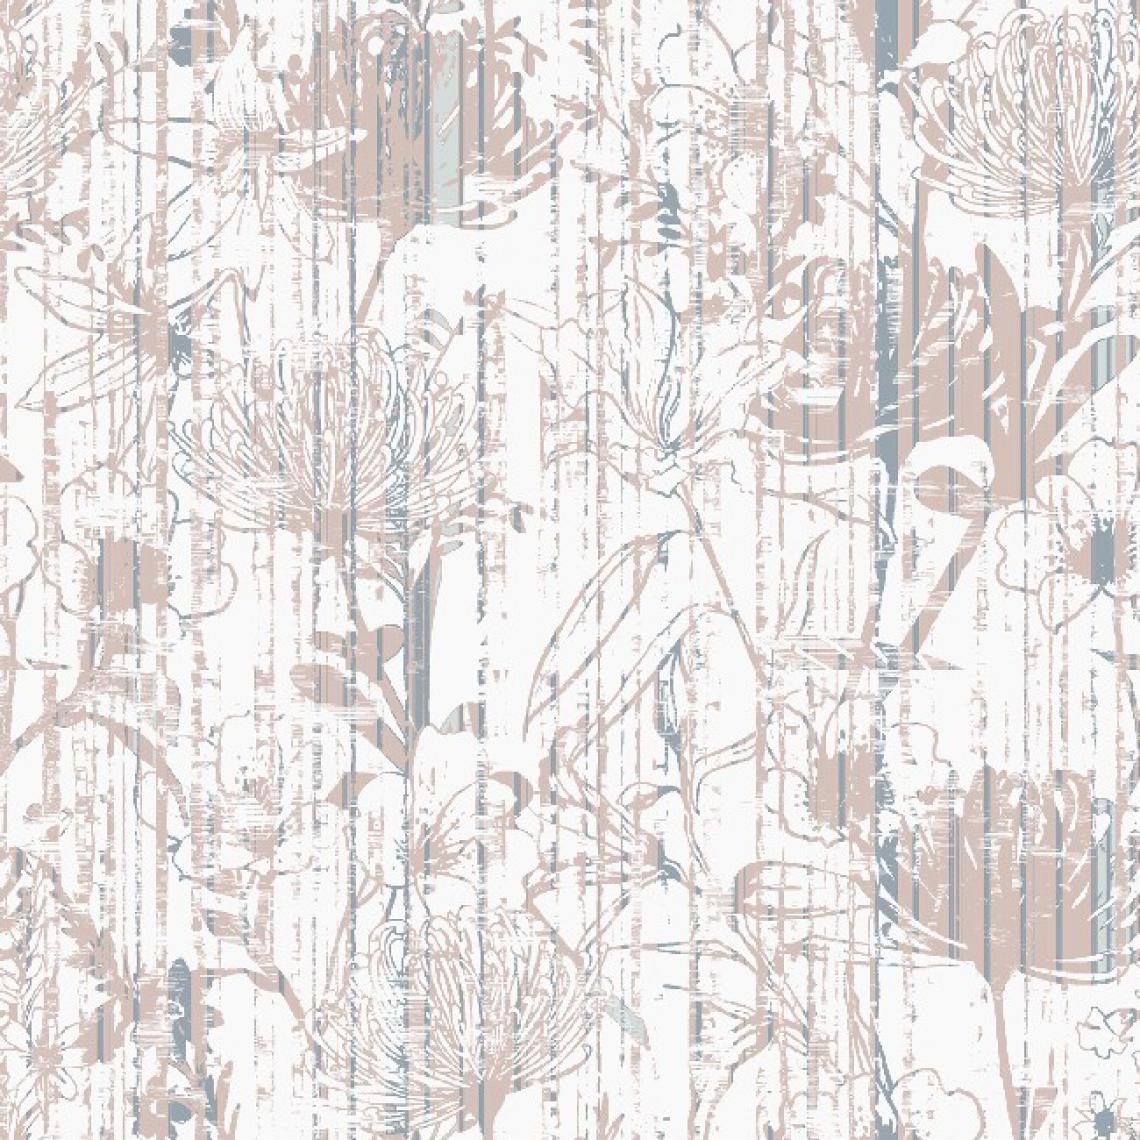 Homemania - HOMEMANIA Tapis Imprimé Flower Dream - Résumé - Décoration de Maison - antidérapants - Pour Salon, séjour, chambre à coucher - Multicolore en Polyester, Coton, 80 x 50 cm - Tapis